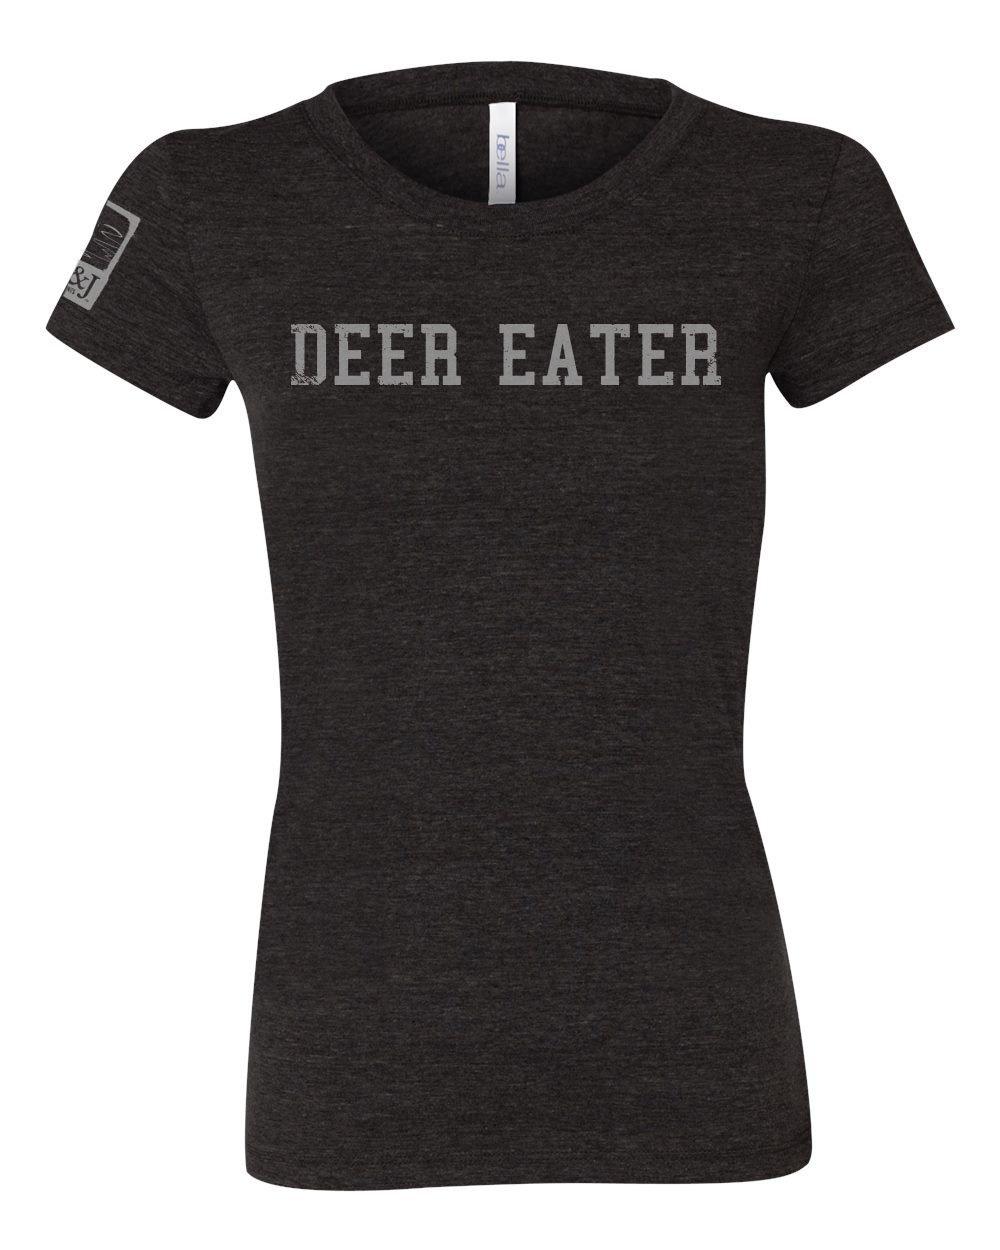 Women's Cut Charcoal Deer Eater Shirt